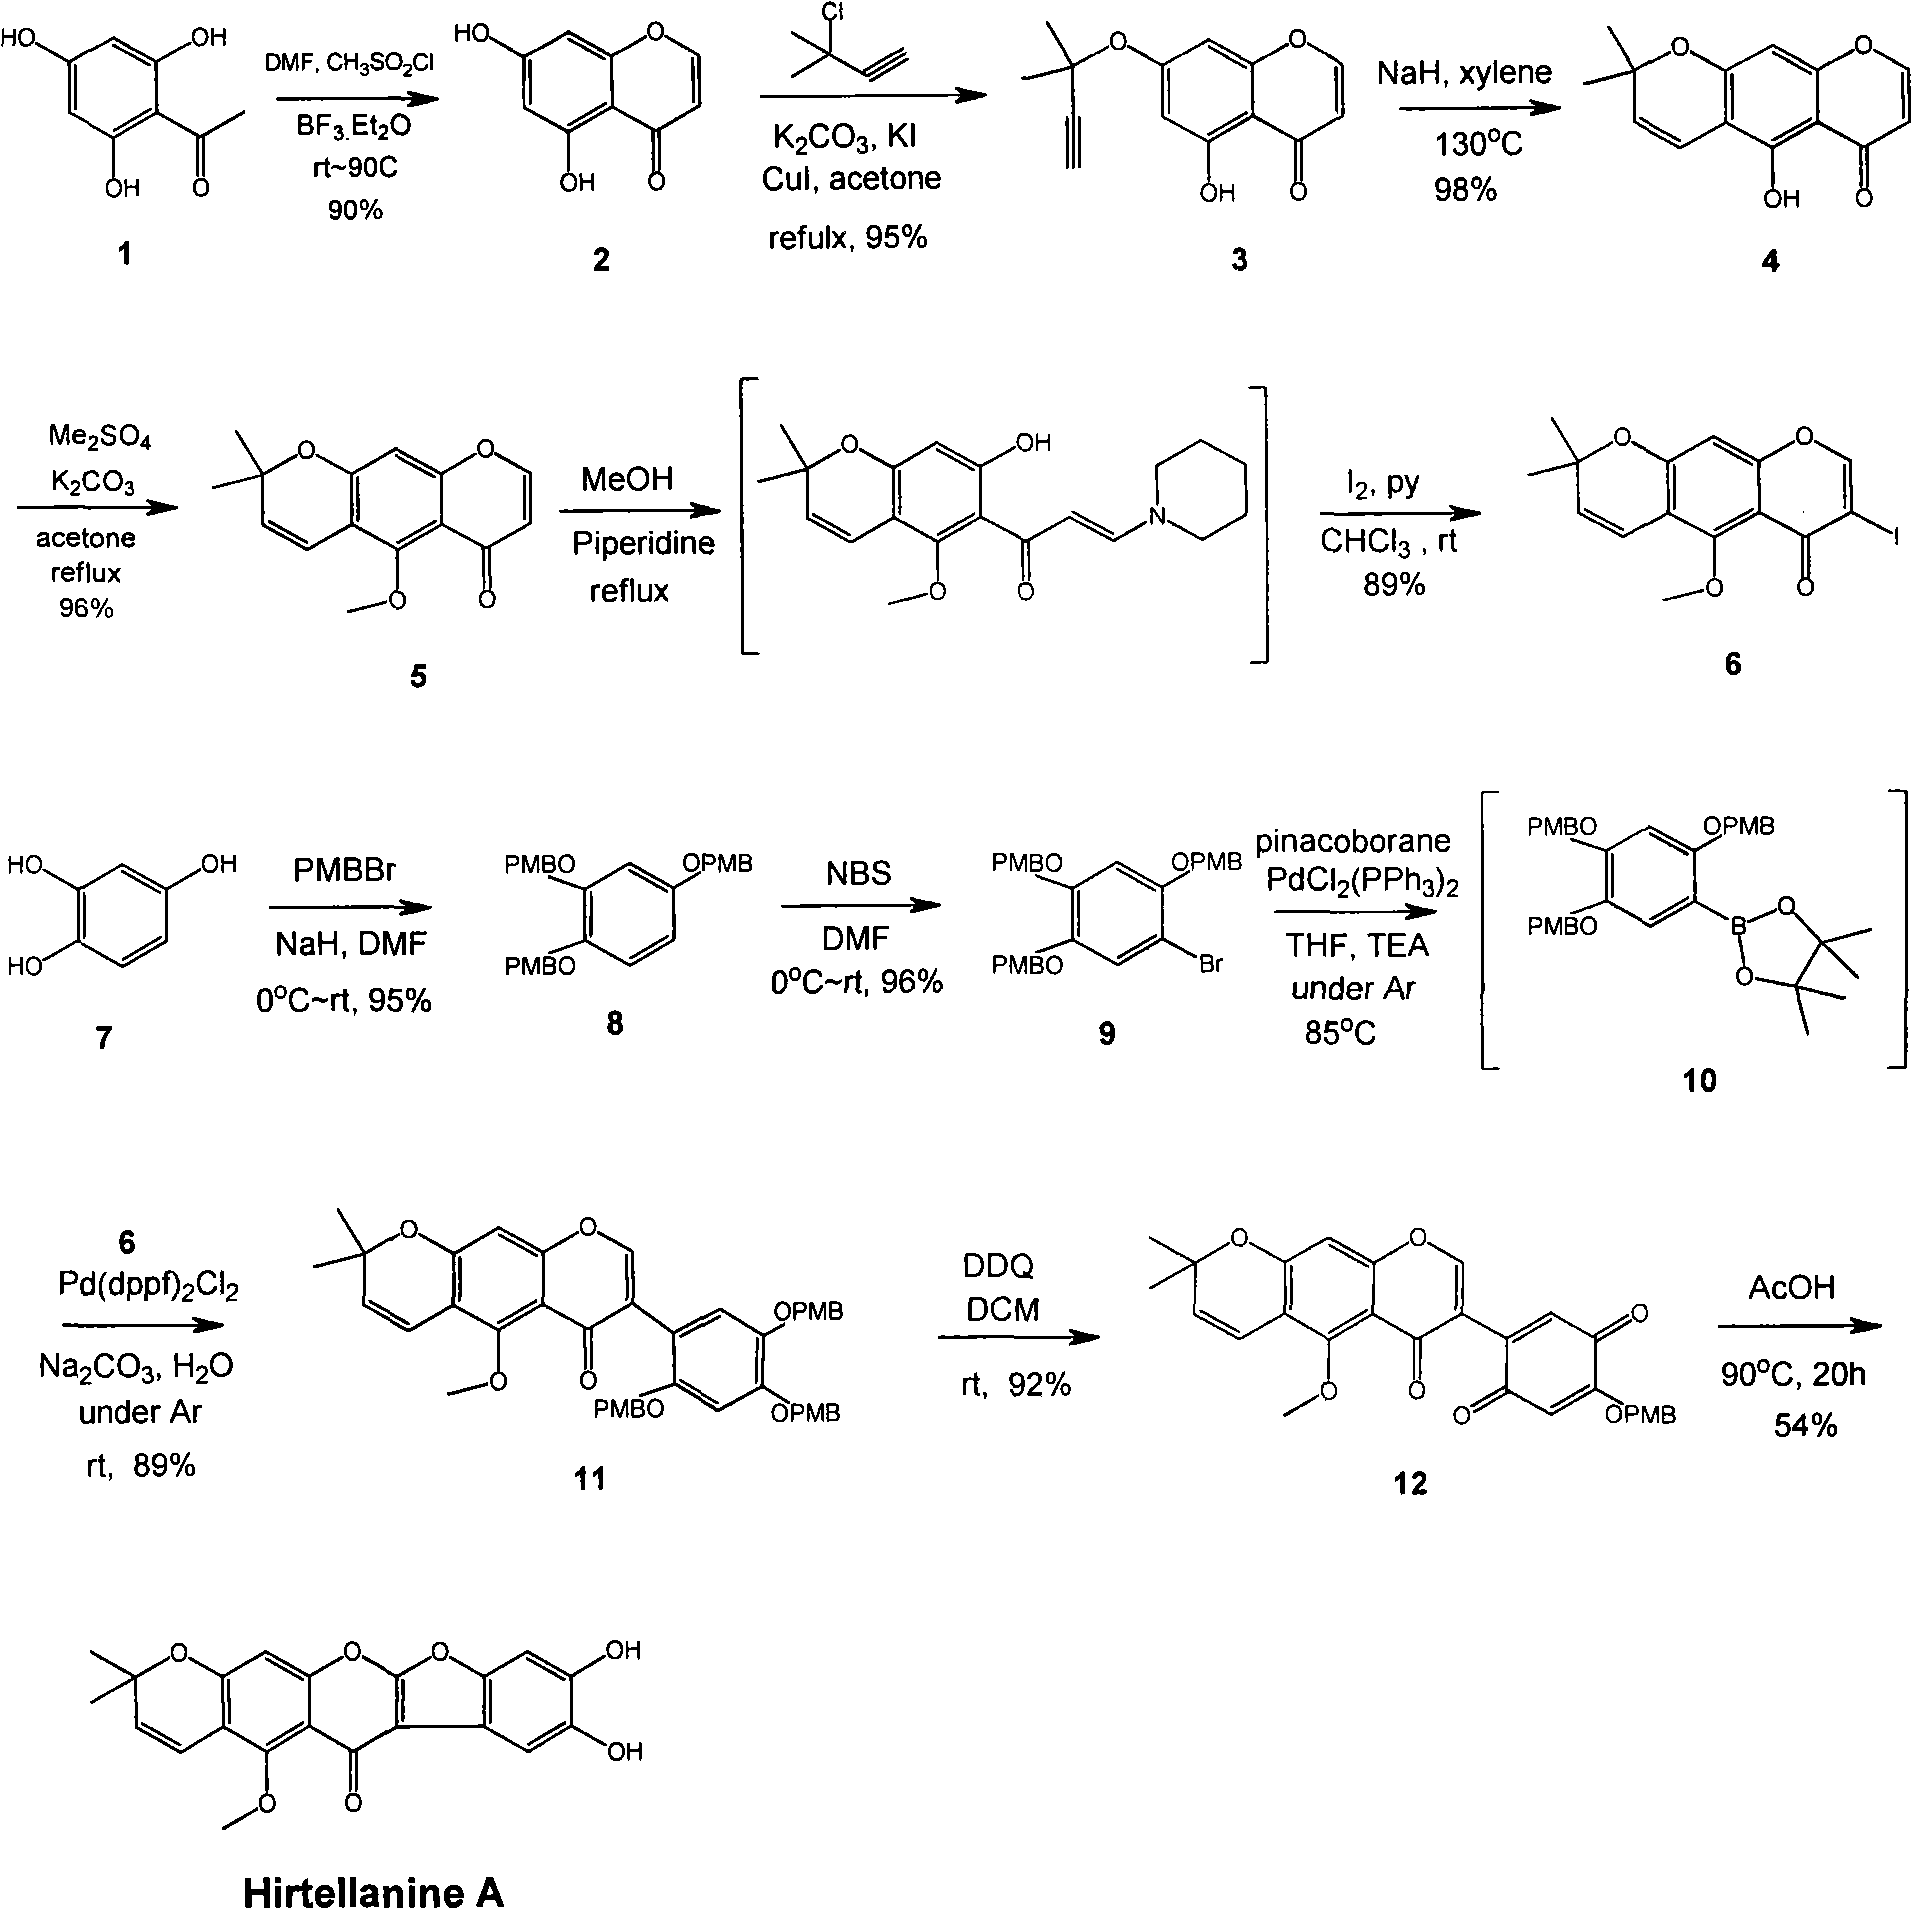 Full synthesis method of 4'',5''-dihydroxyl-5-methoxyl-[6'',6''-dimethyl pyran (2'',3'':7,8)] Hirtellanine A